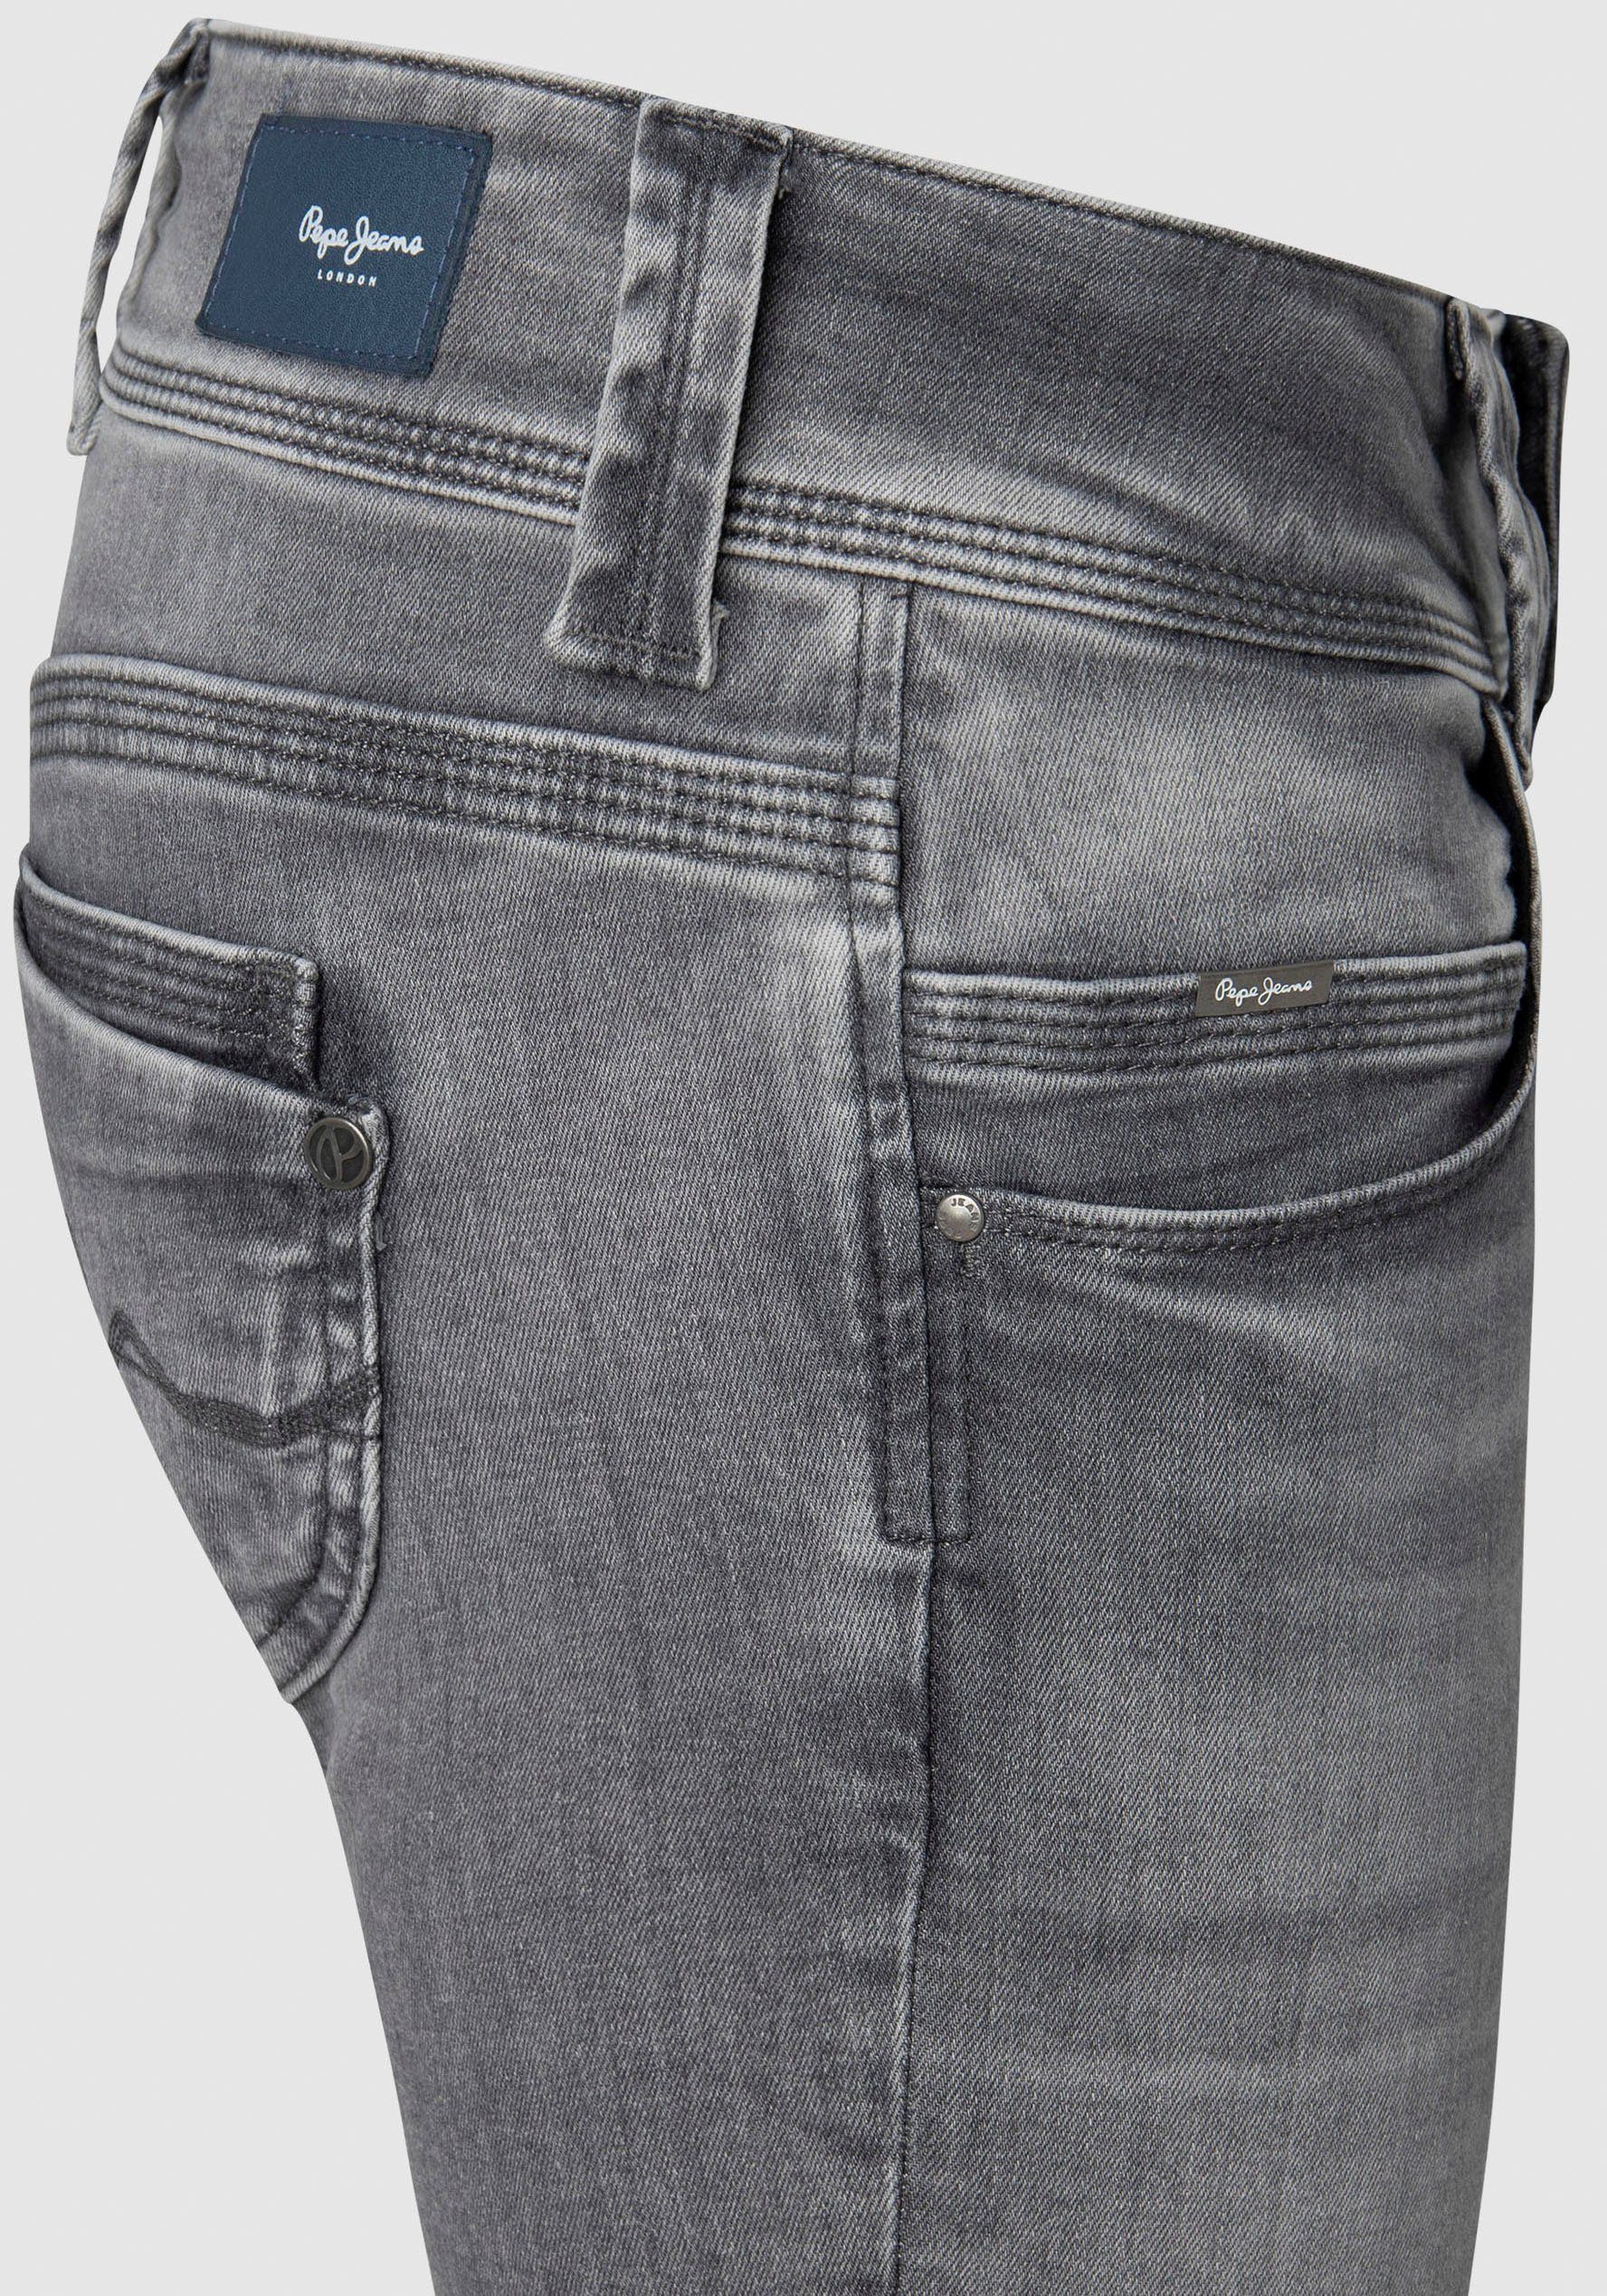 Jeans mit wiser Pepe grey powerflex Badge VENUS Regular-fit-Jeans